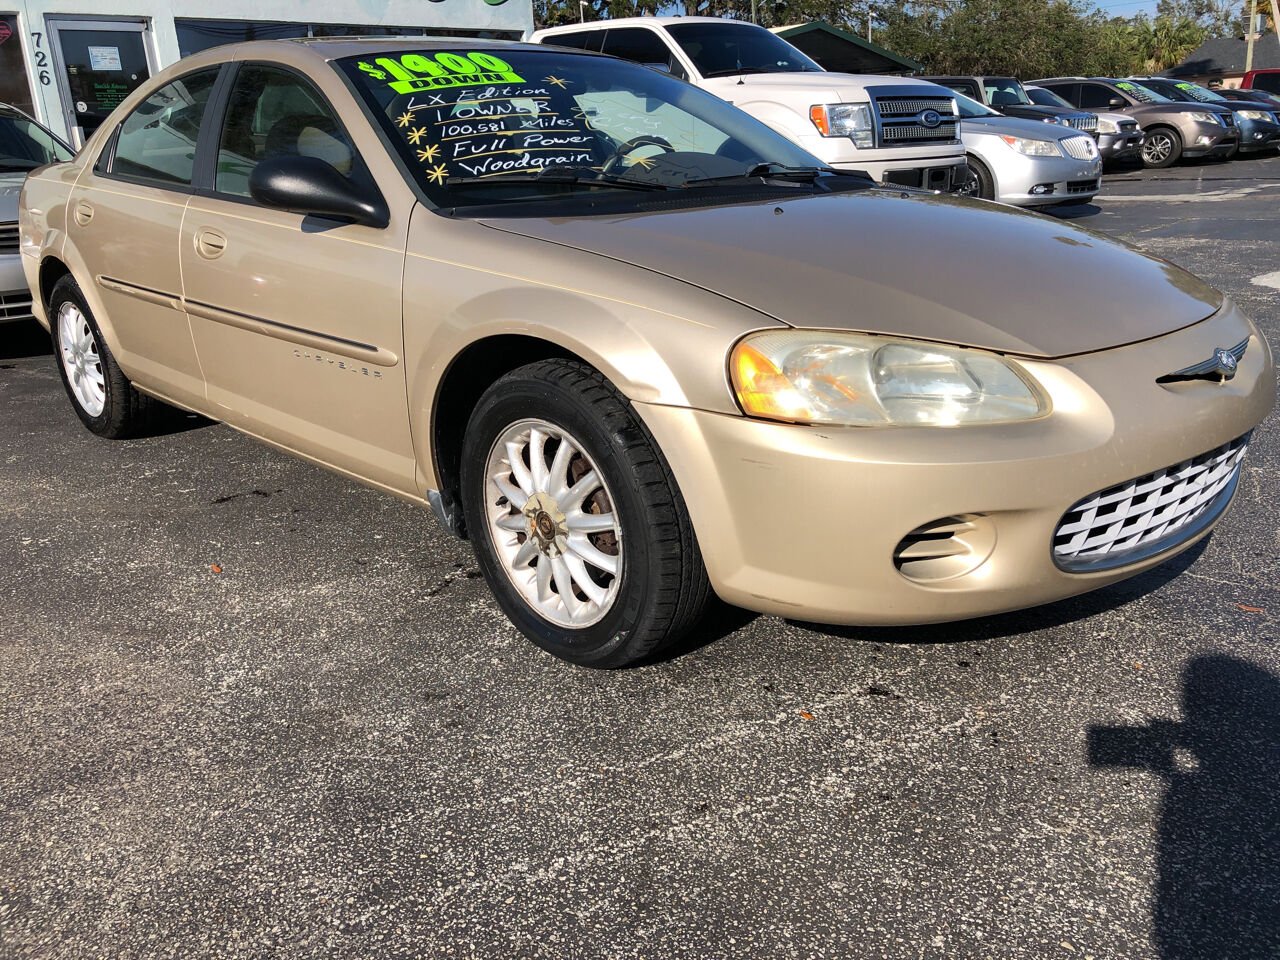 2001 Chrysler Sebring For Sale - Carsforsale.com®